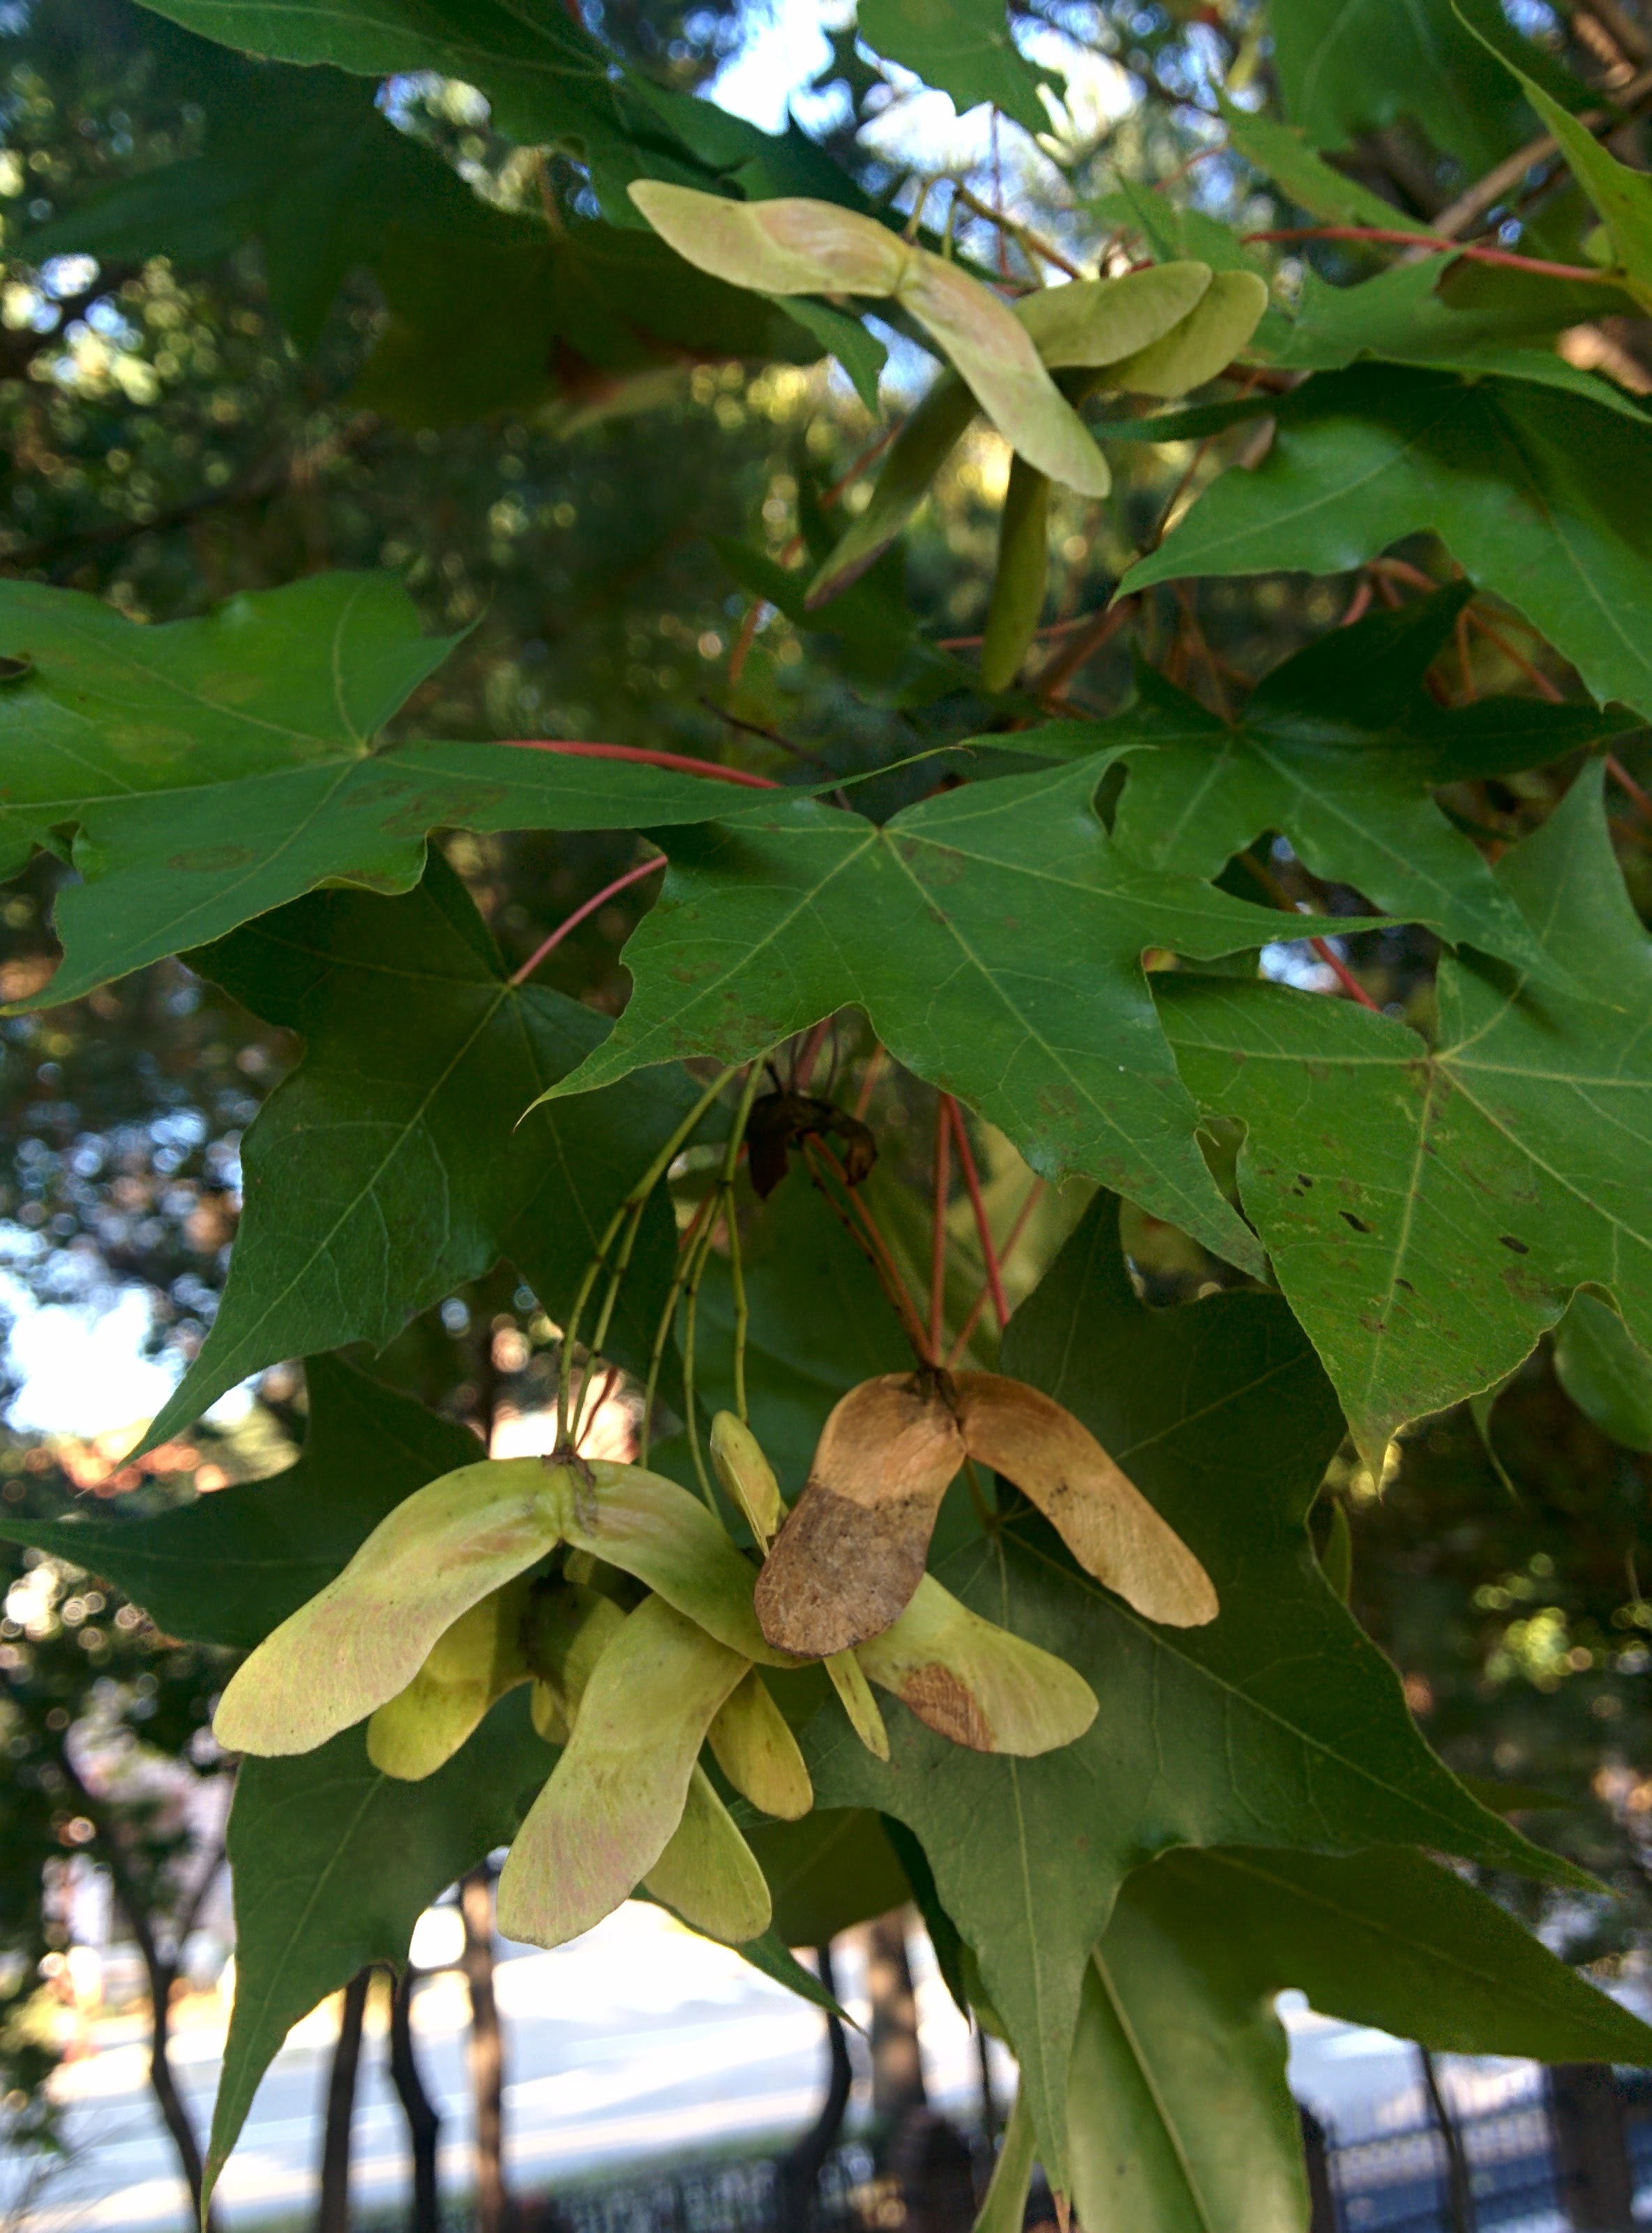 IMG_20151013_161634.jpg 쌍날개의 부메랑, 단풍나무 닮은 나무의 열매 -- 고로쇠나무